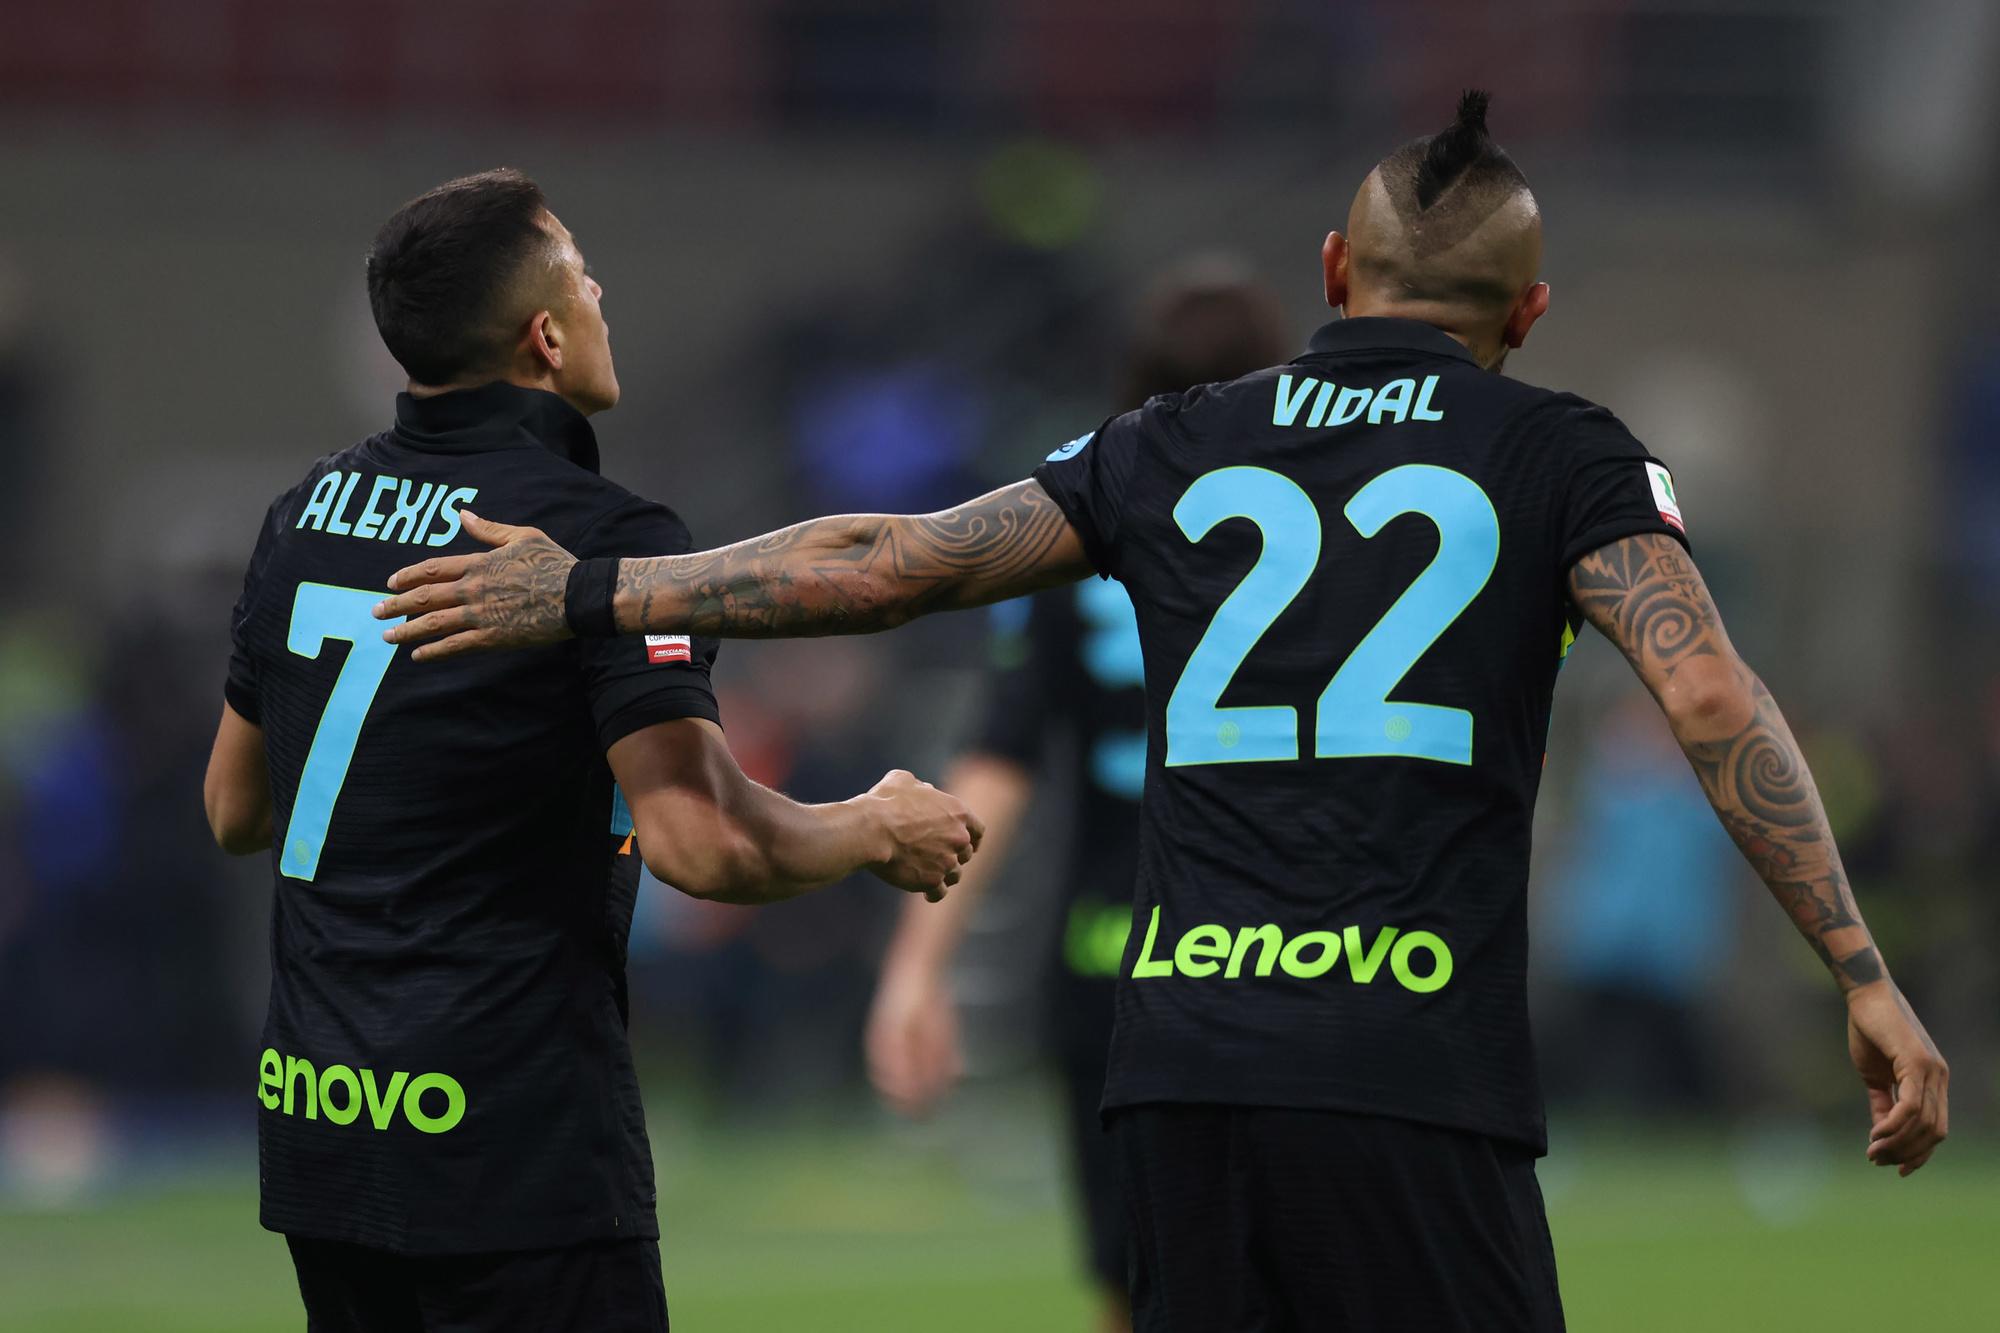 De contracten van grootverdieners Vidal en Sanchez zou Inter graag zien veranderen.